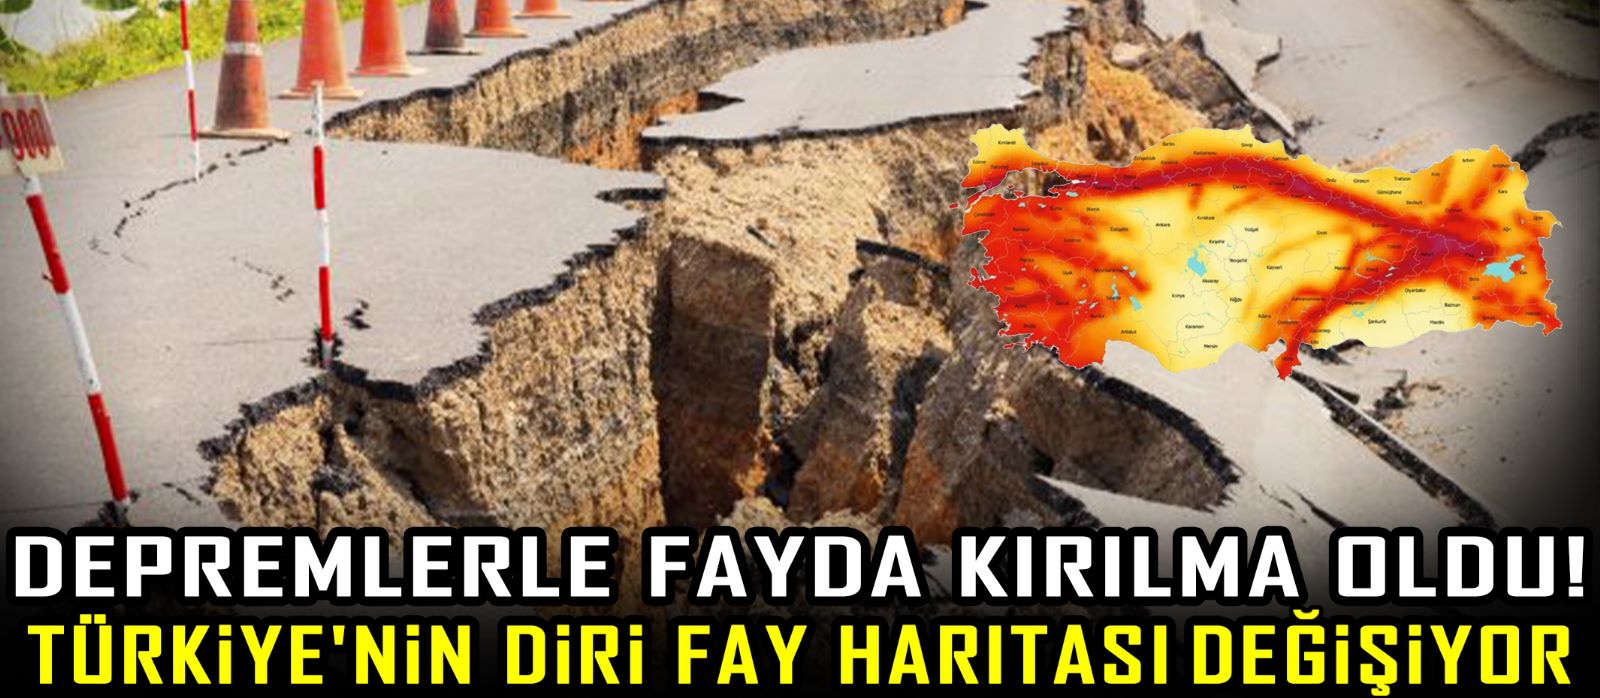 Depremlerle fayda kırılma oldu! Türkiye'nin diri fay haritası değişiyor